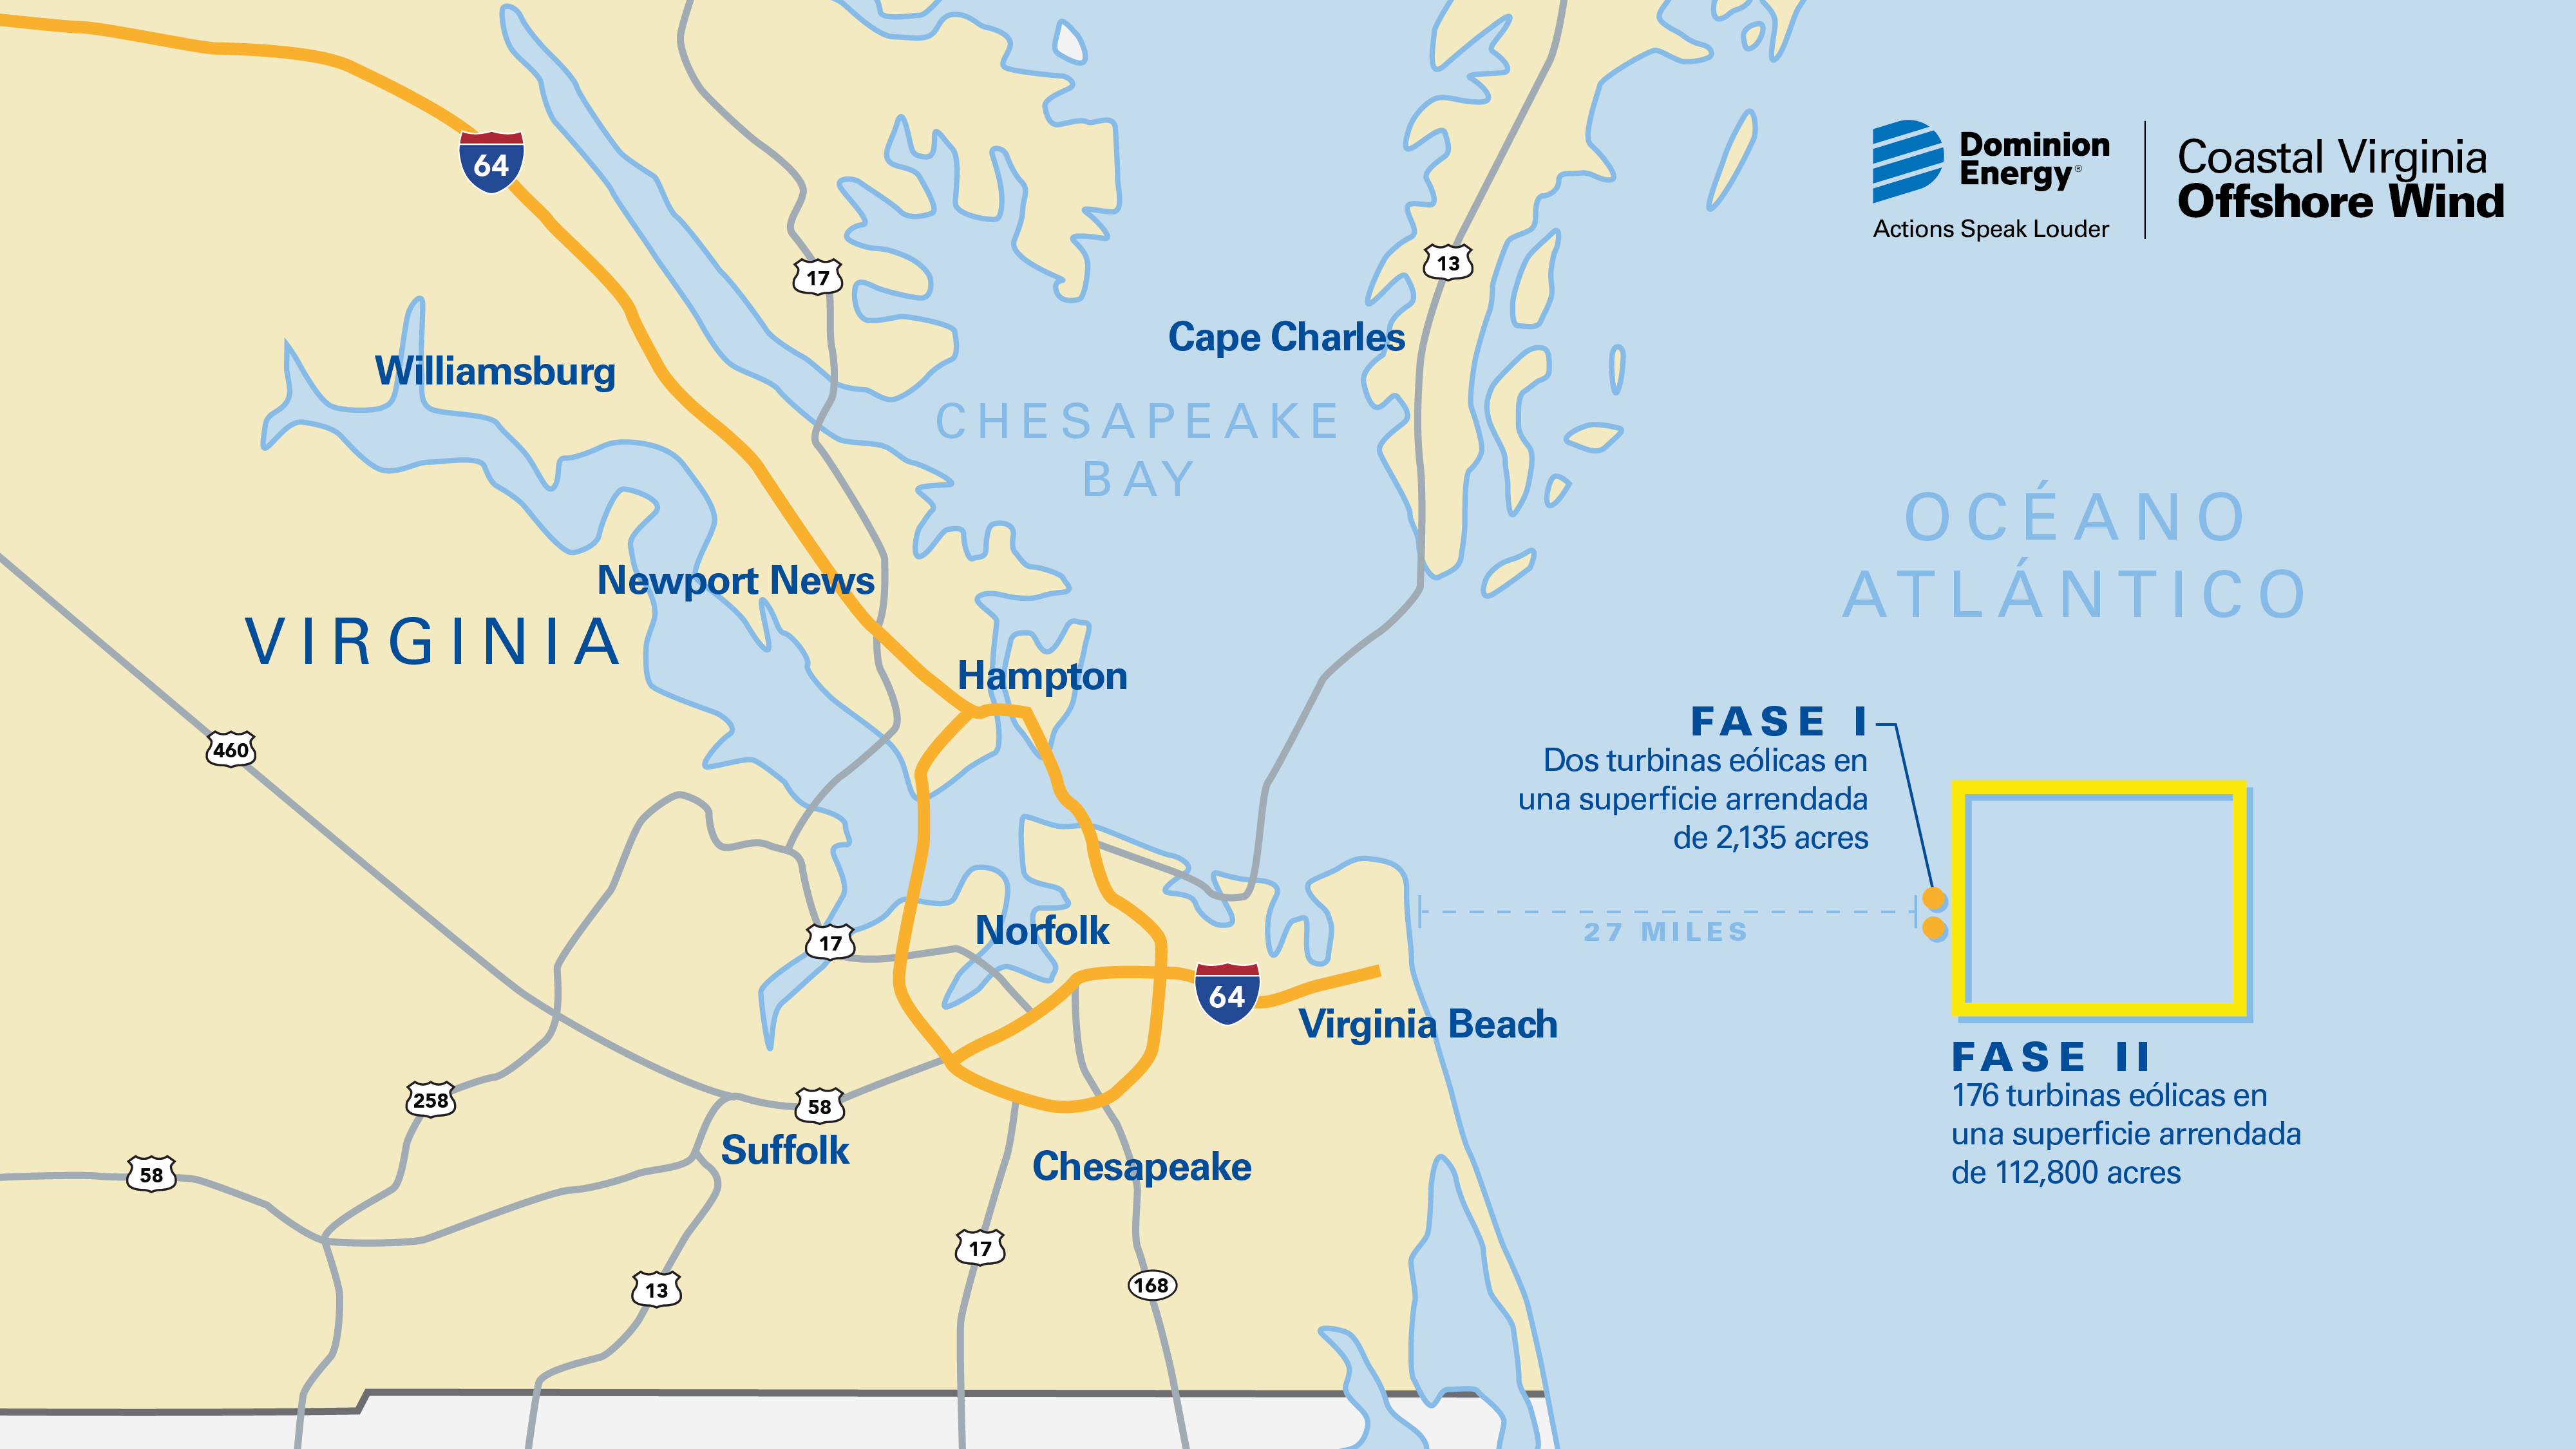 Mapa del proyecto eólico marino de la costa de Virginia que muestra la Fase I y la Fase II